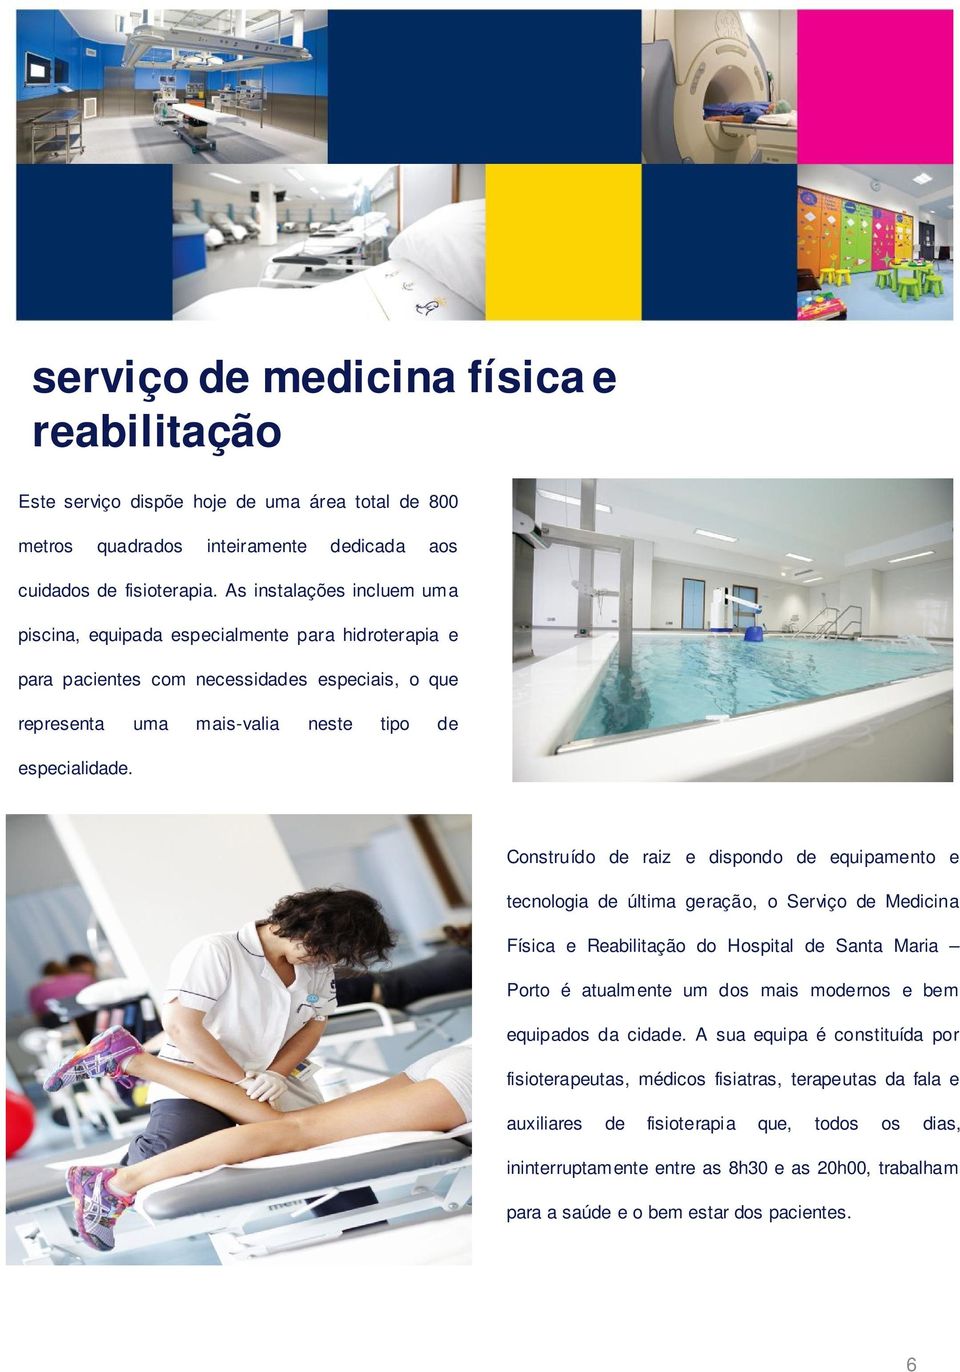 Construído de raiz e dispondo de equipamento e tecnologia de última geração, o Serviço de Medicina Física e Reabilitação do Hospital de Santa Maria Porto é atualmente um dos mais modernos e bem